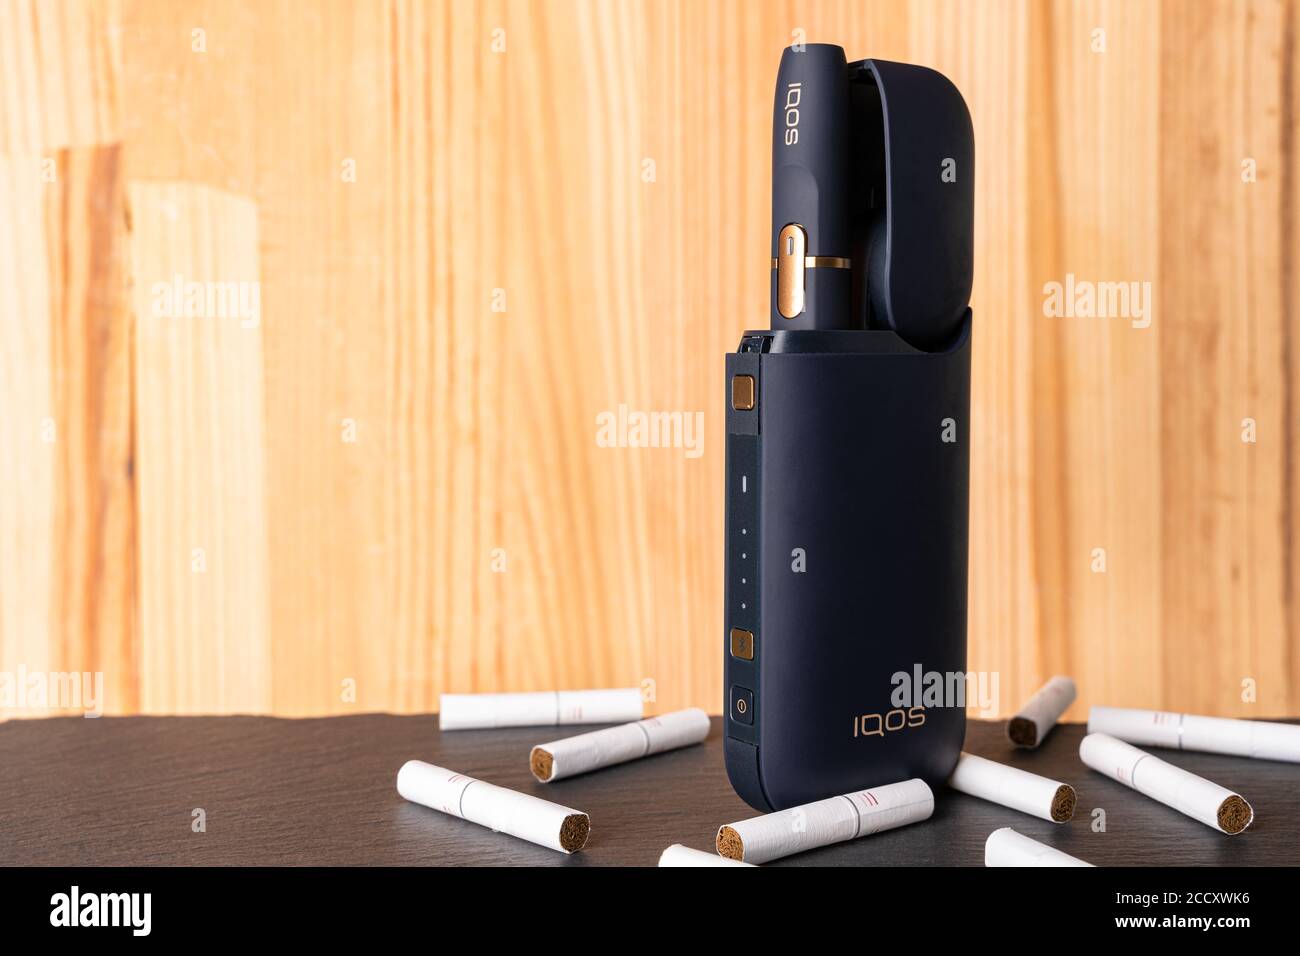 Gdansk, Pologne - 11 août 2020 : système de chauffage du tabac IQOS produit par Philip Morris International, propriétaire de la marque Marlboro. Banque D'Images